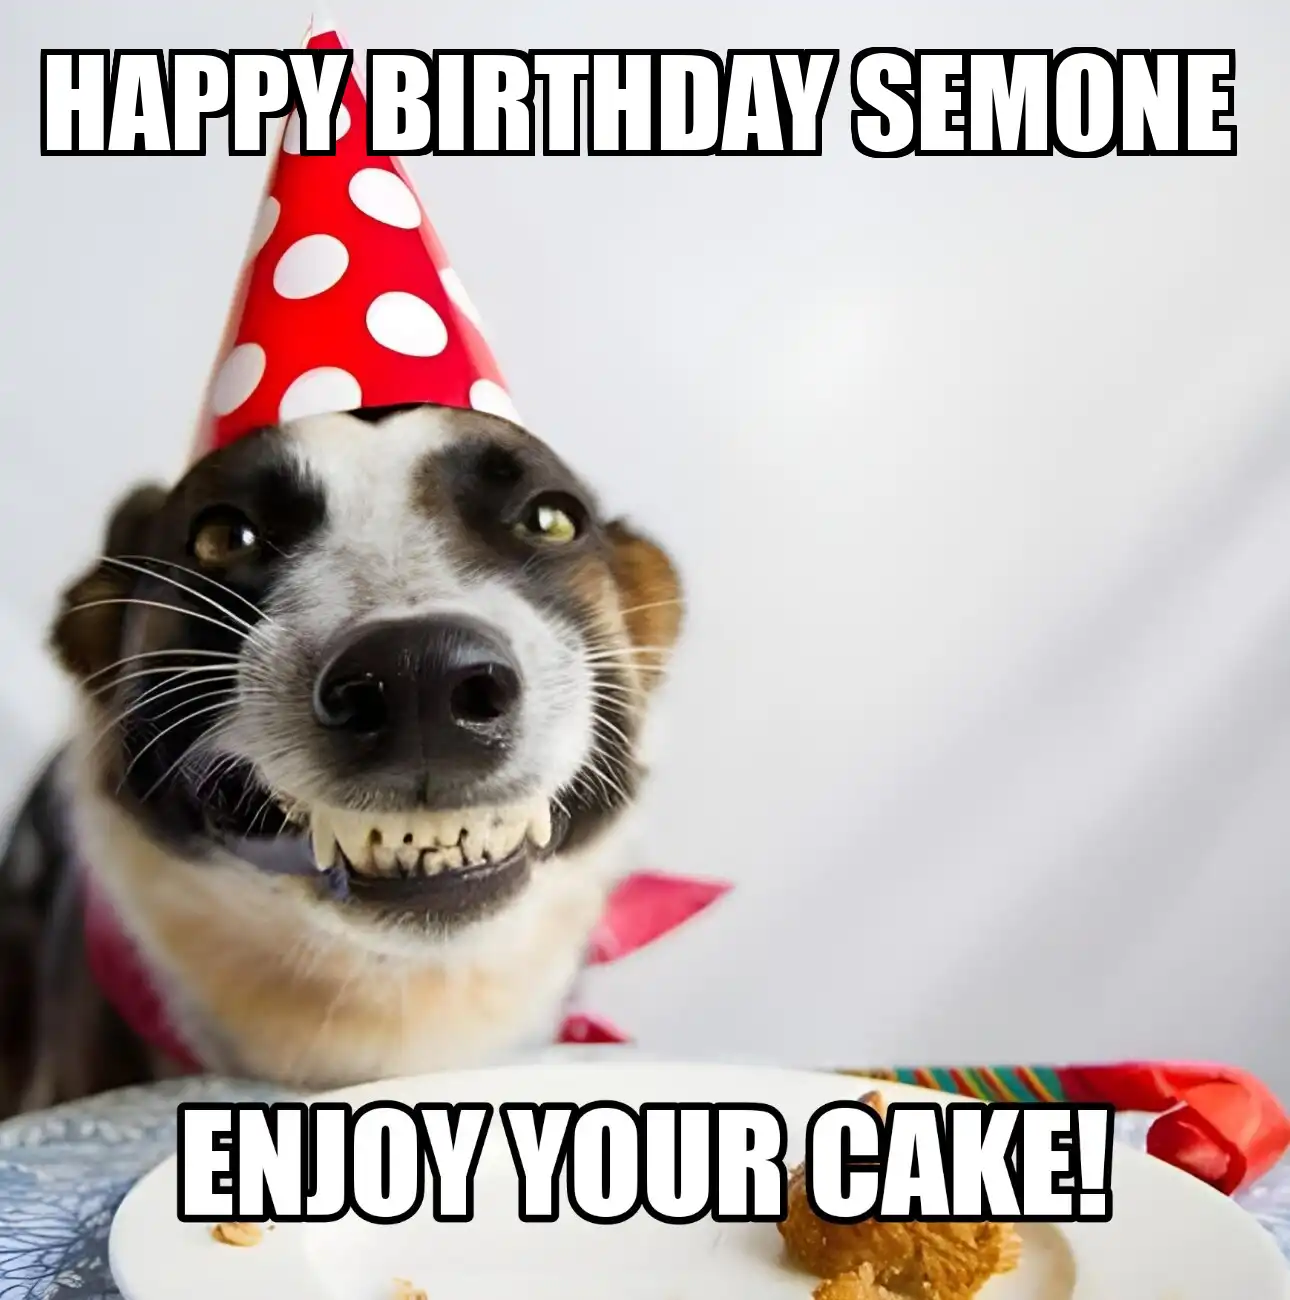 Happy Birthday Semone Enjoy Your Cake Dog Meme